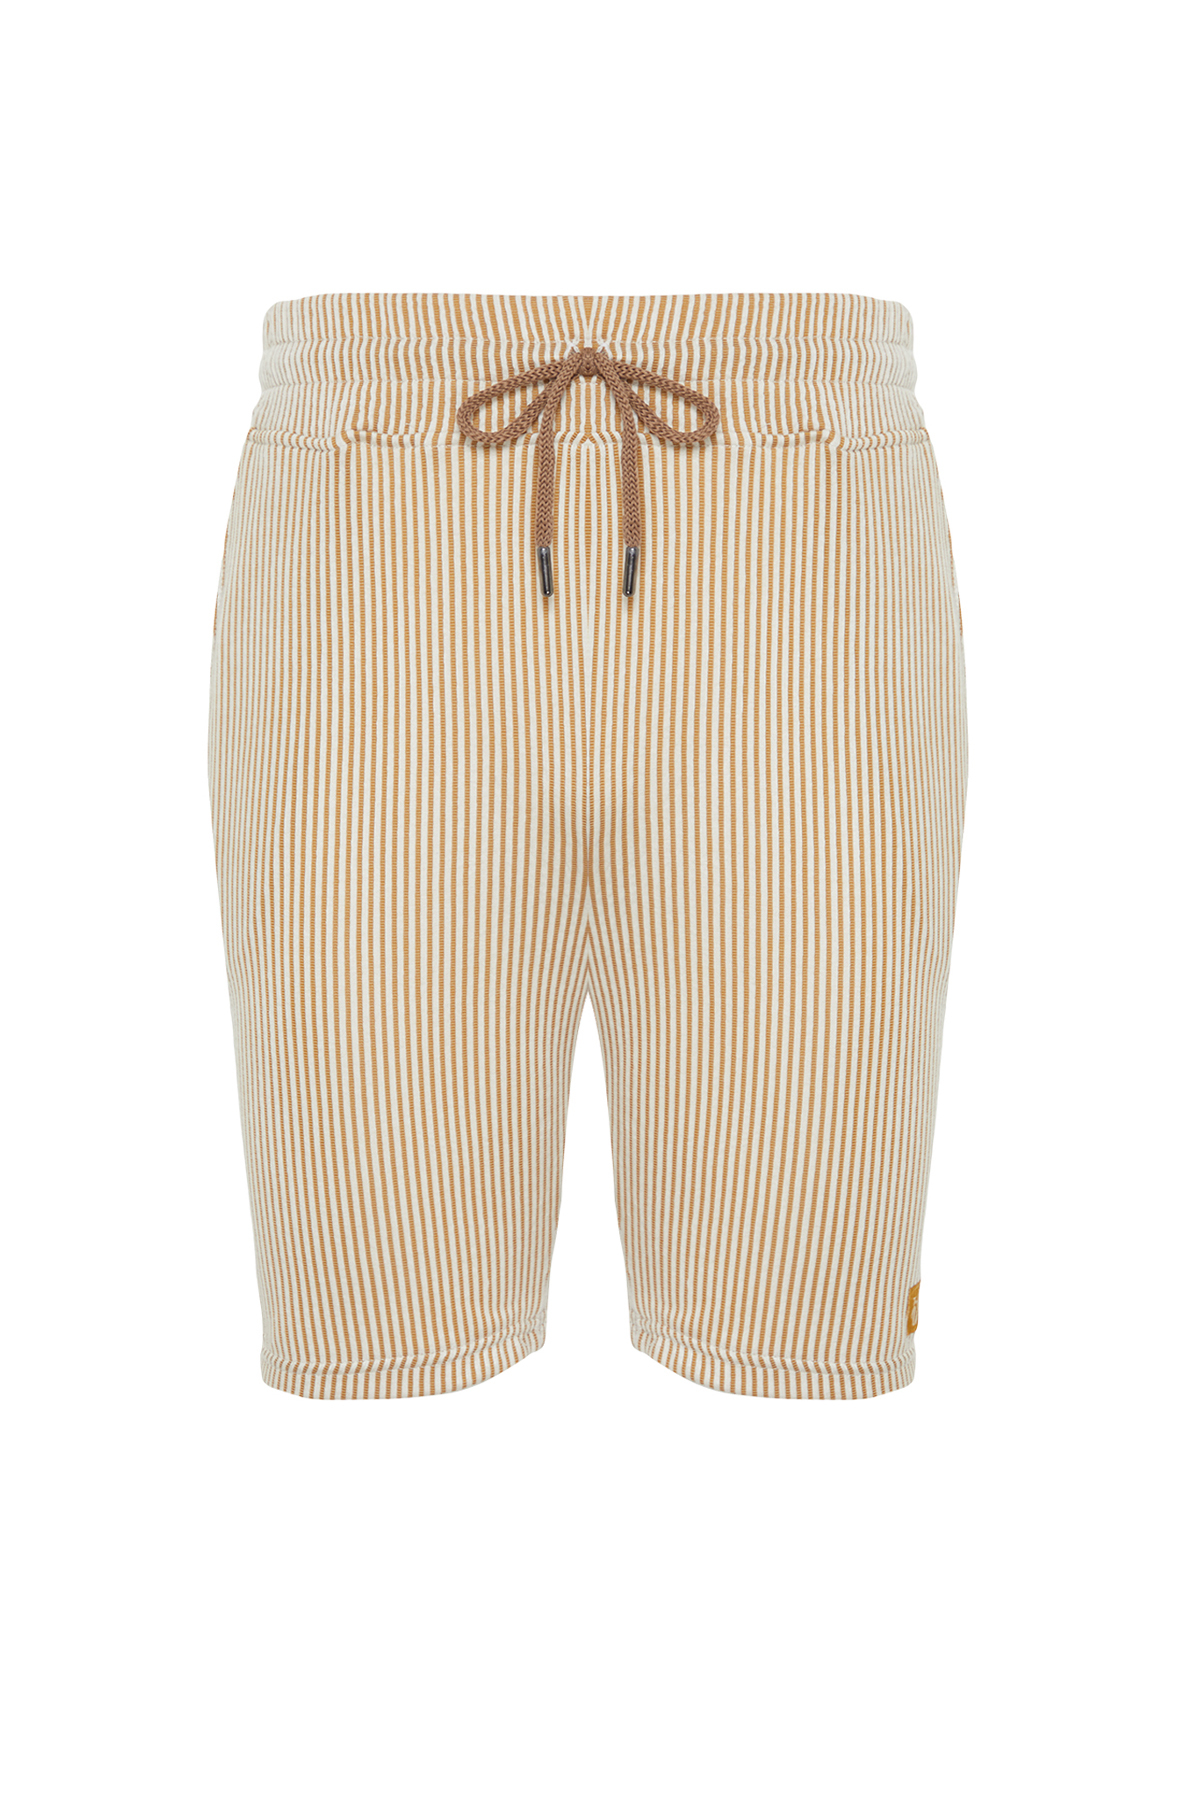 Trendyol Beige Striped Regular/Regular Fit Shorts